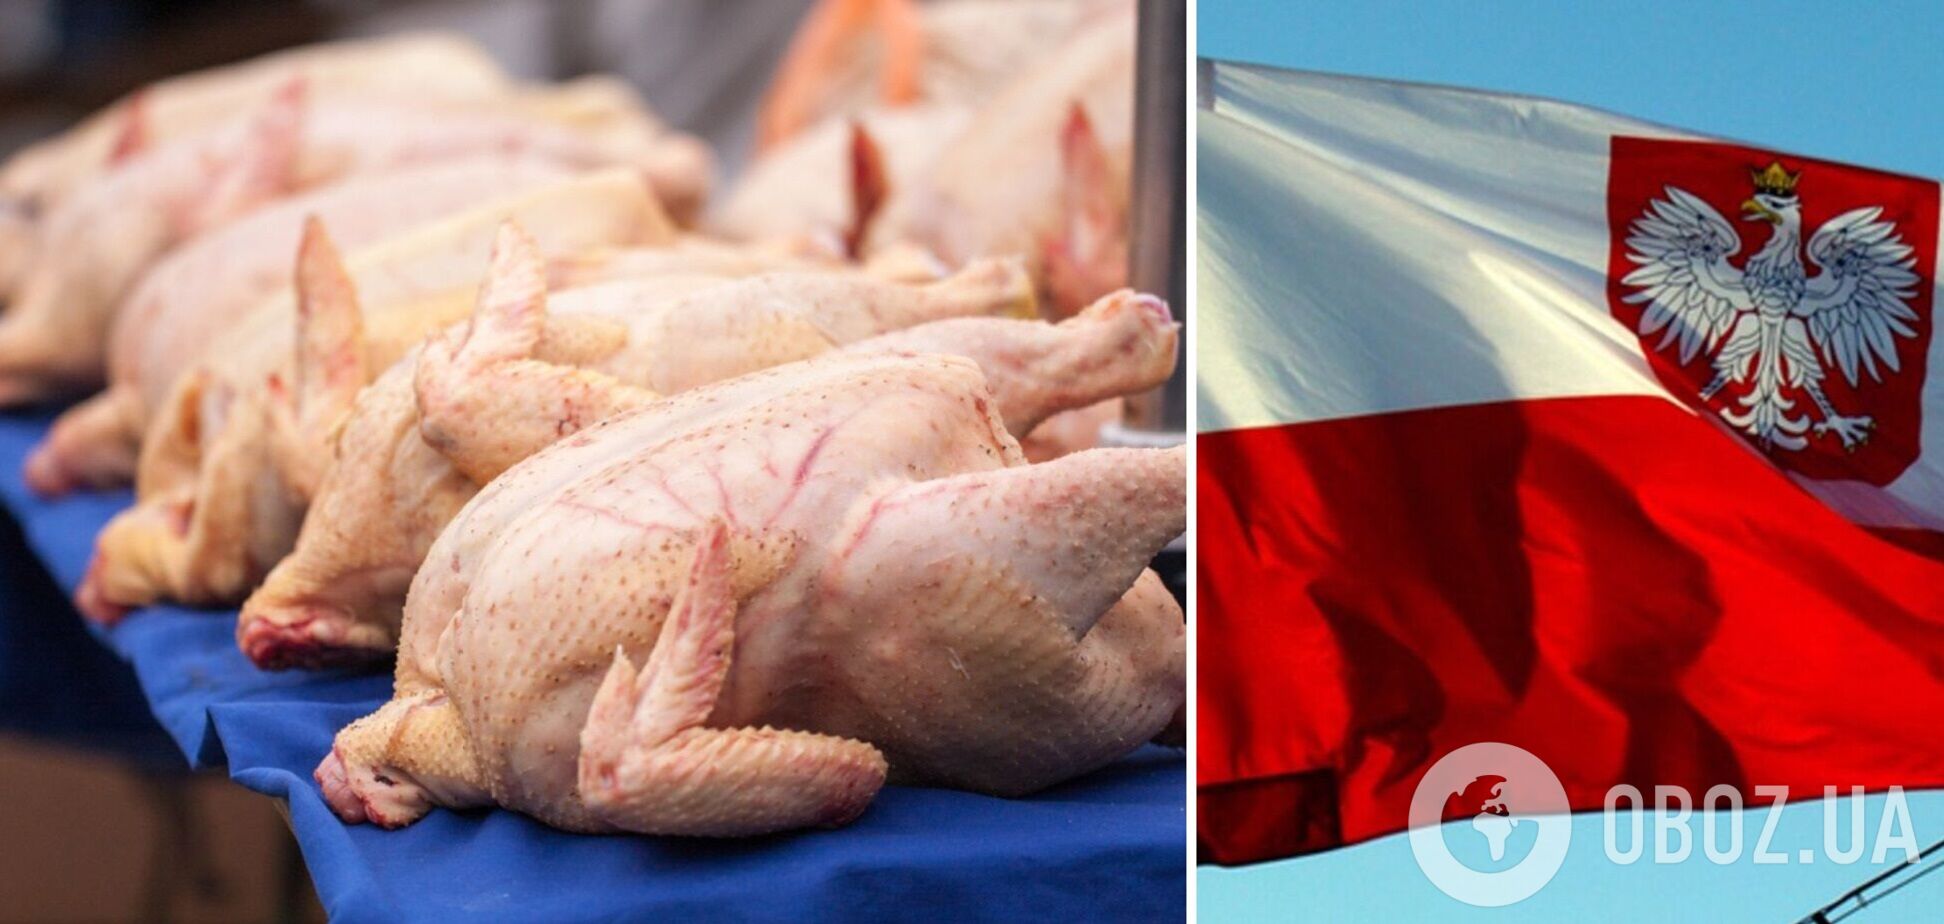 В Україну з Польщі завезли курятину із сальмонелою